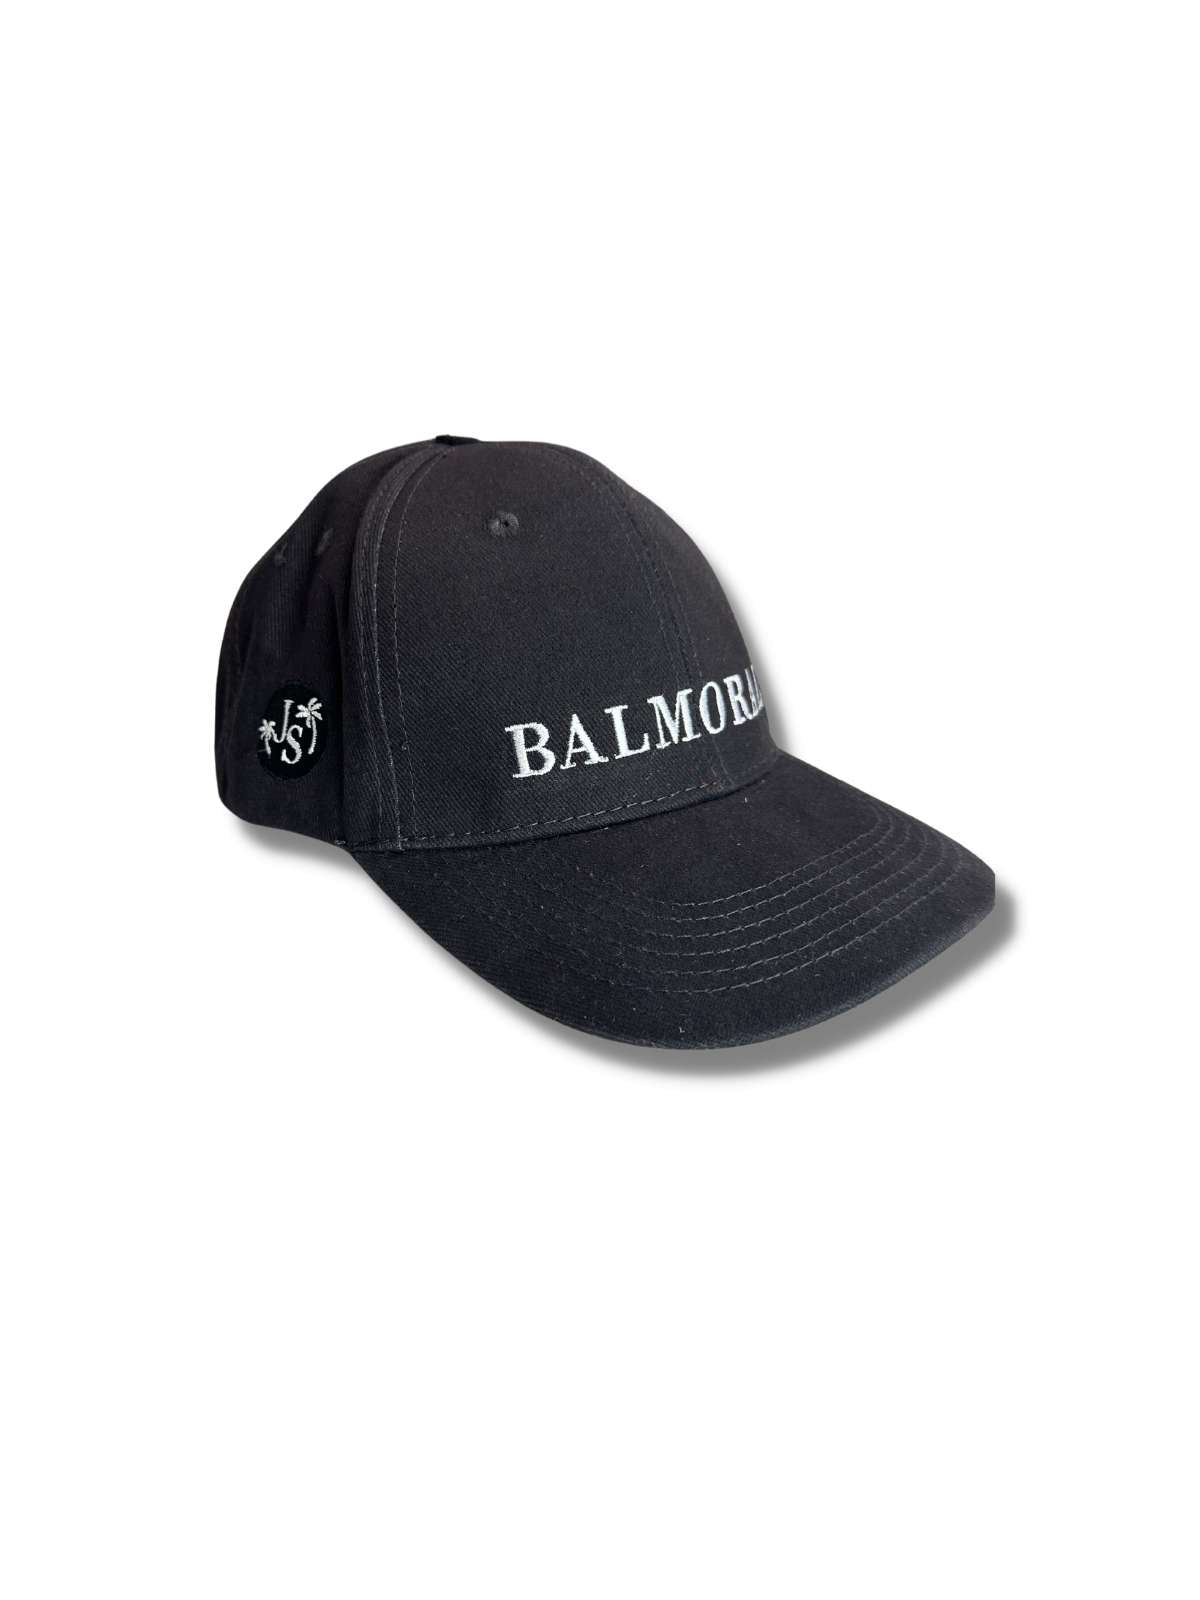 Balmoral Unisex Cotton Cap - Charcoal